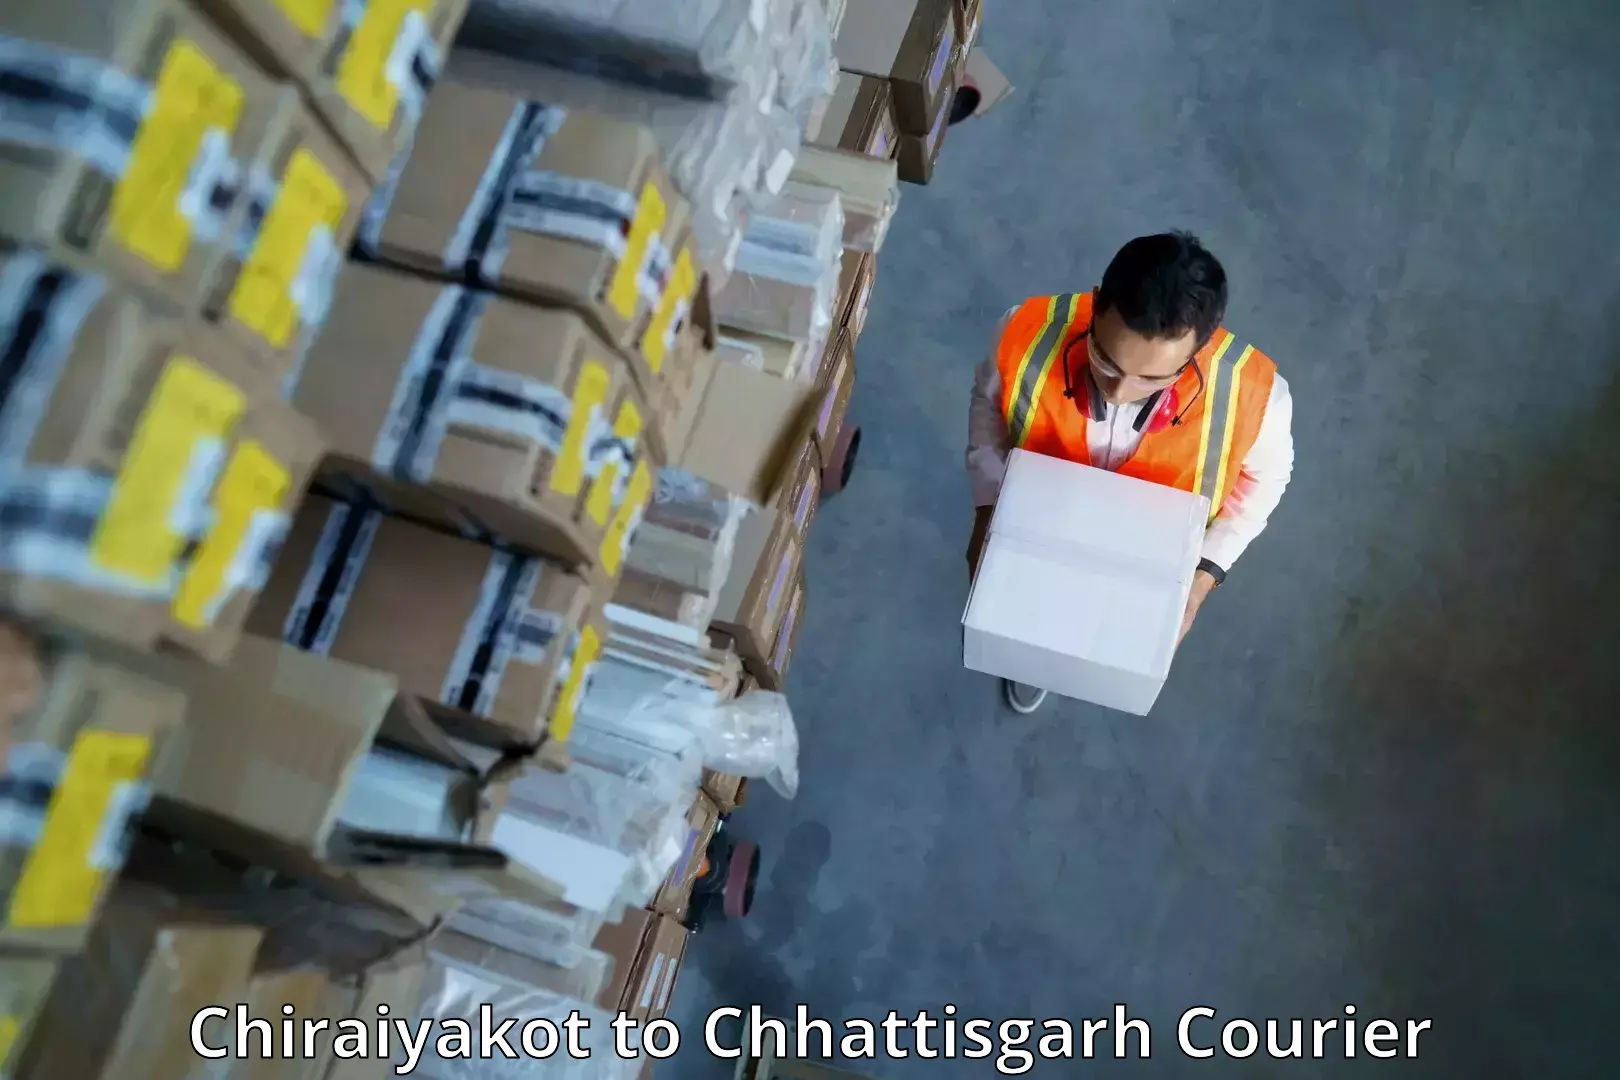 Pharmaceutical courier Chiraiyakot to Ramanujganj